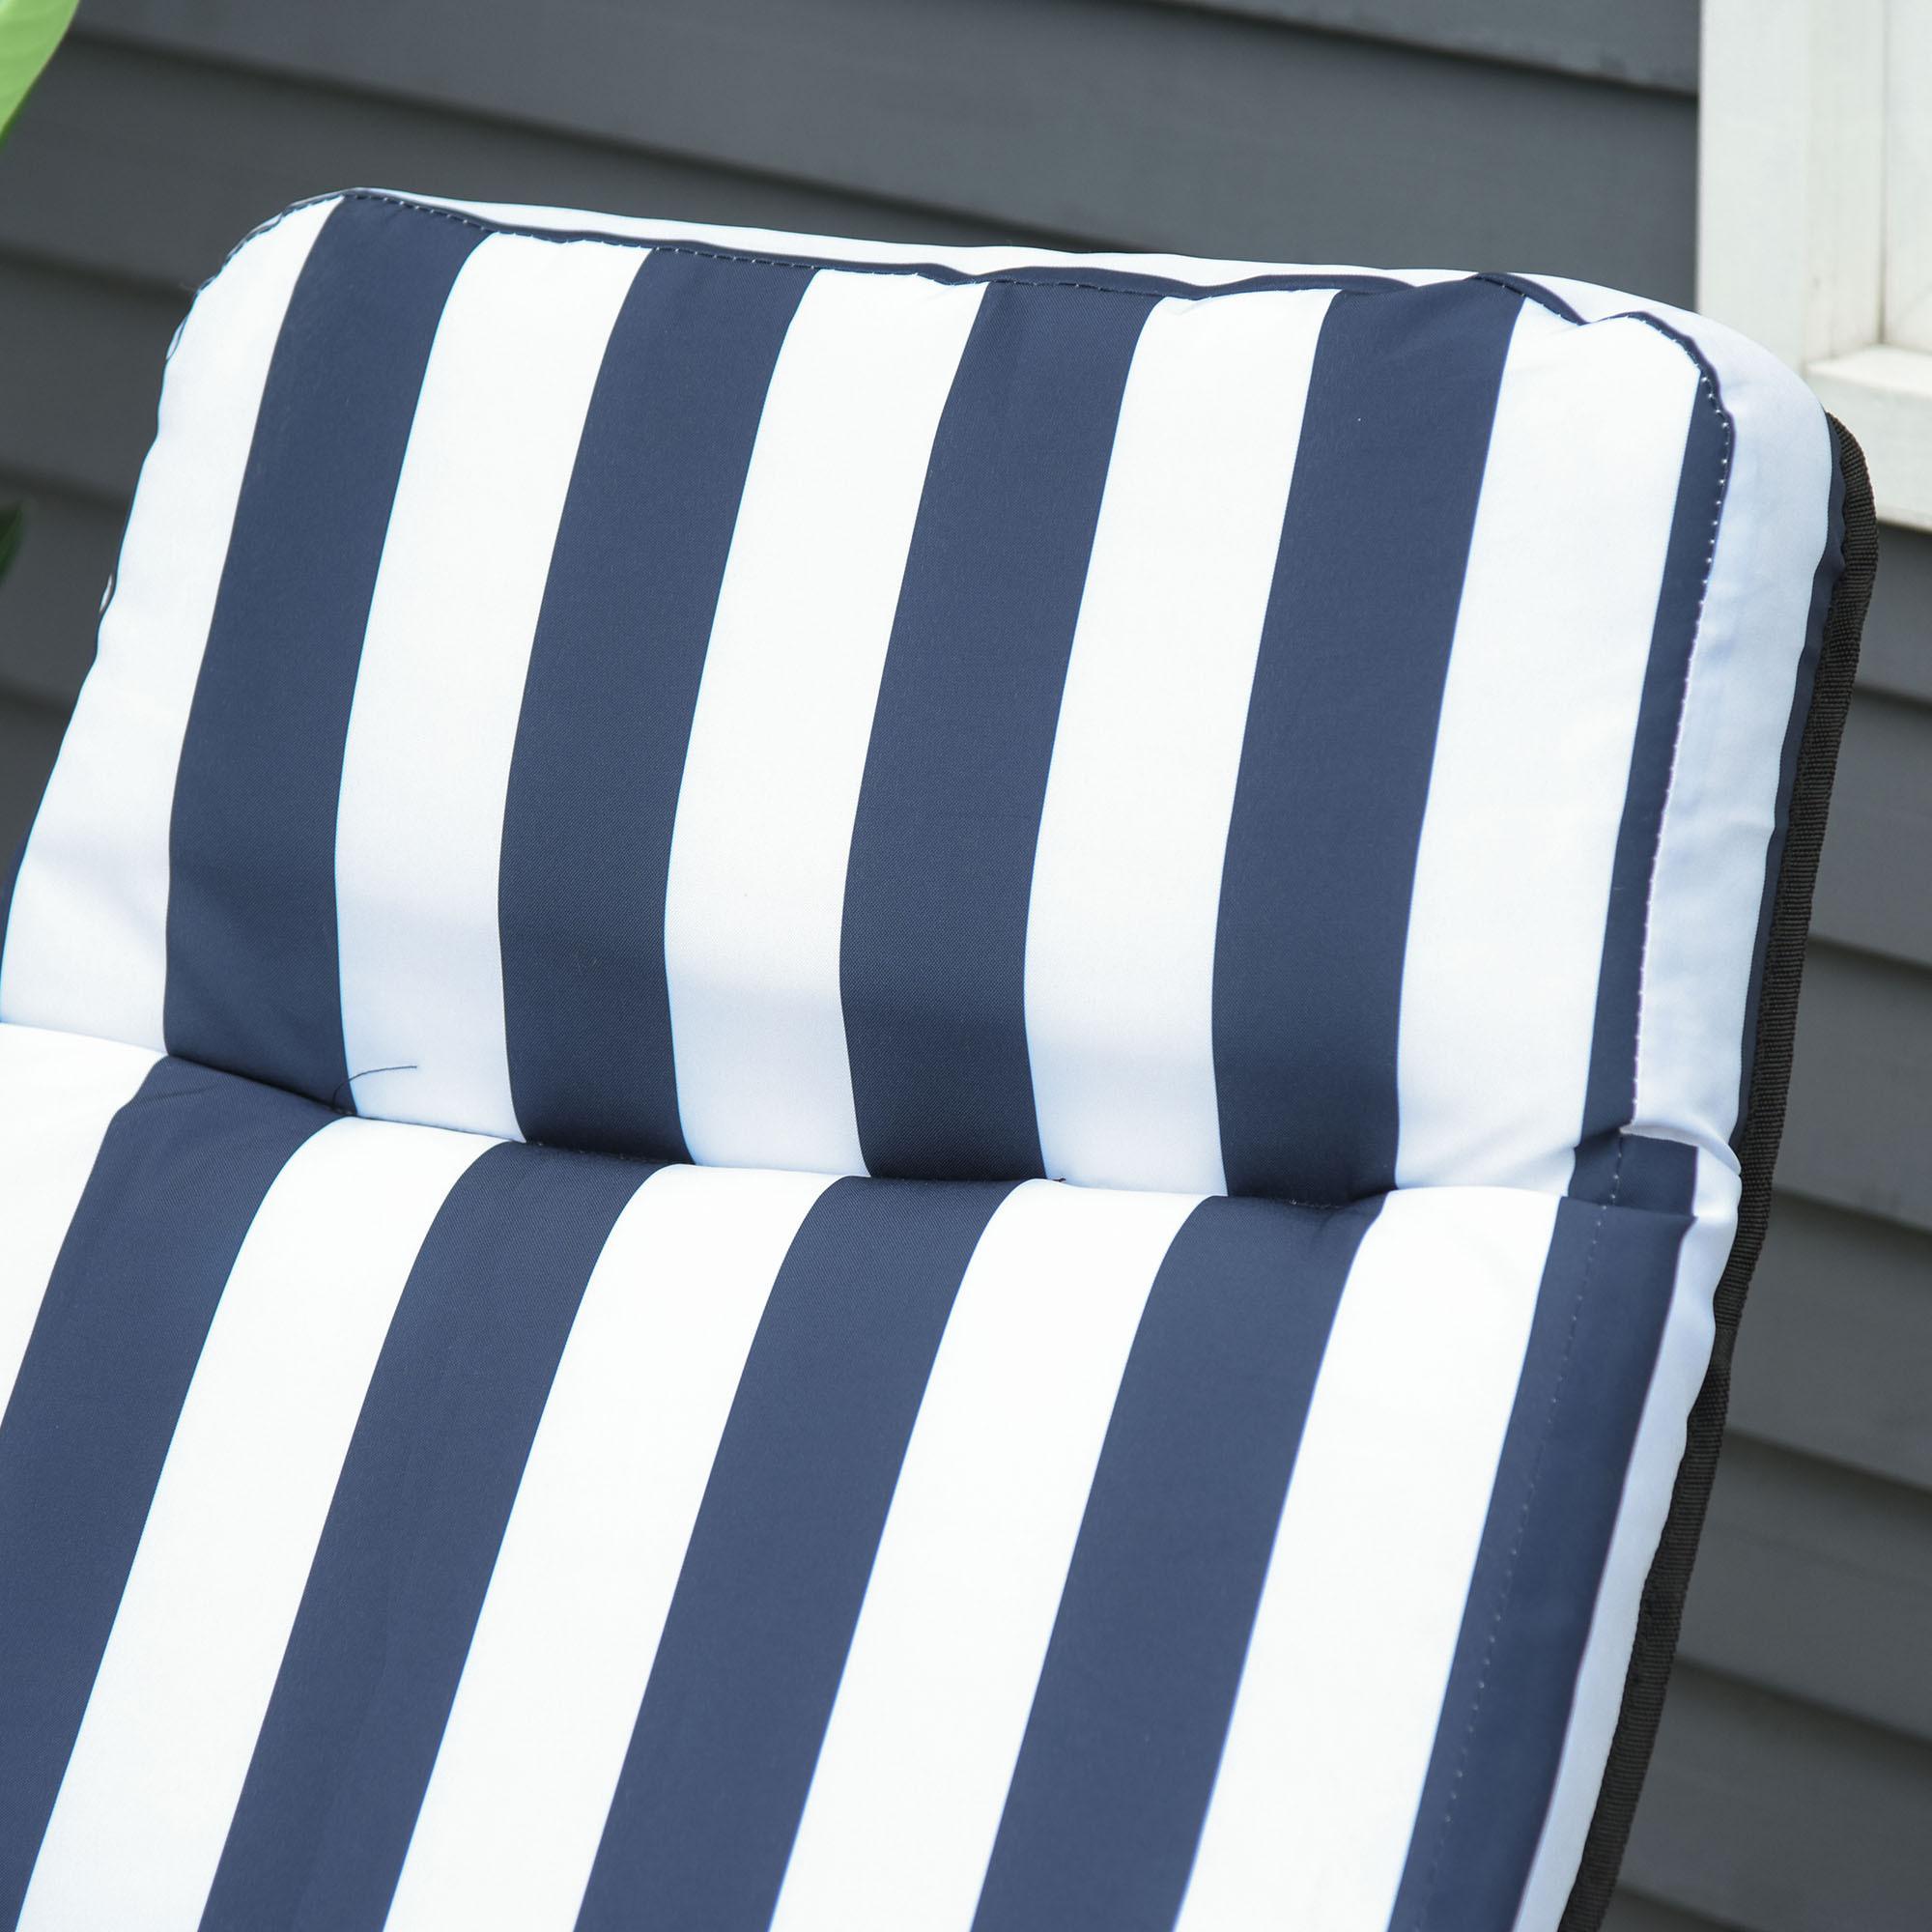 Lot de 2 chaise longue bain de soleil adjustable pliable transat lit de jardin en acier bleu + blanc